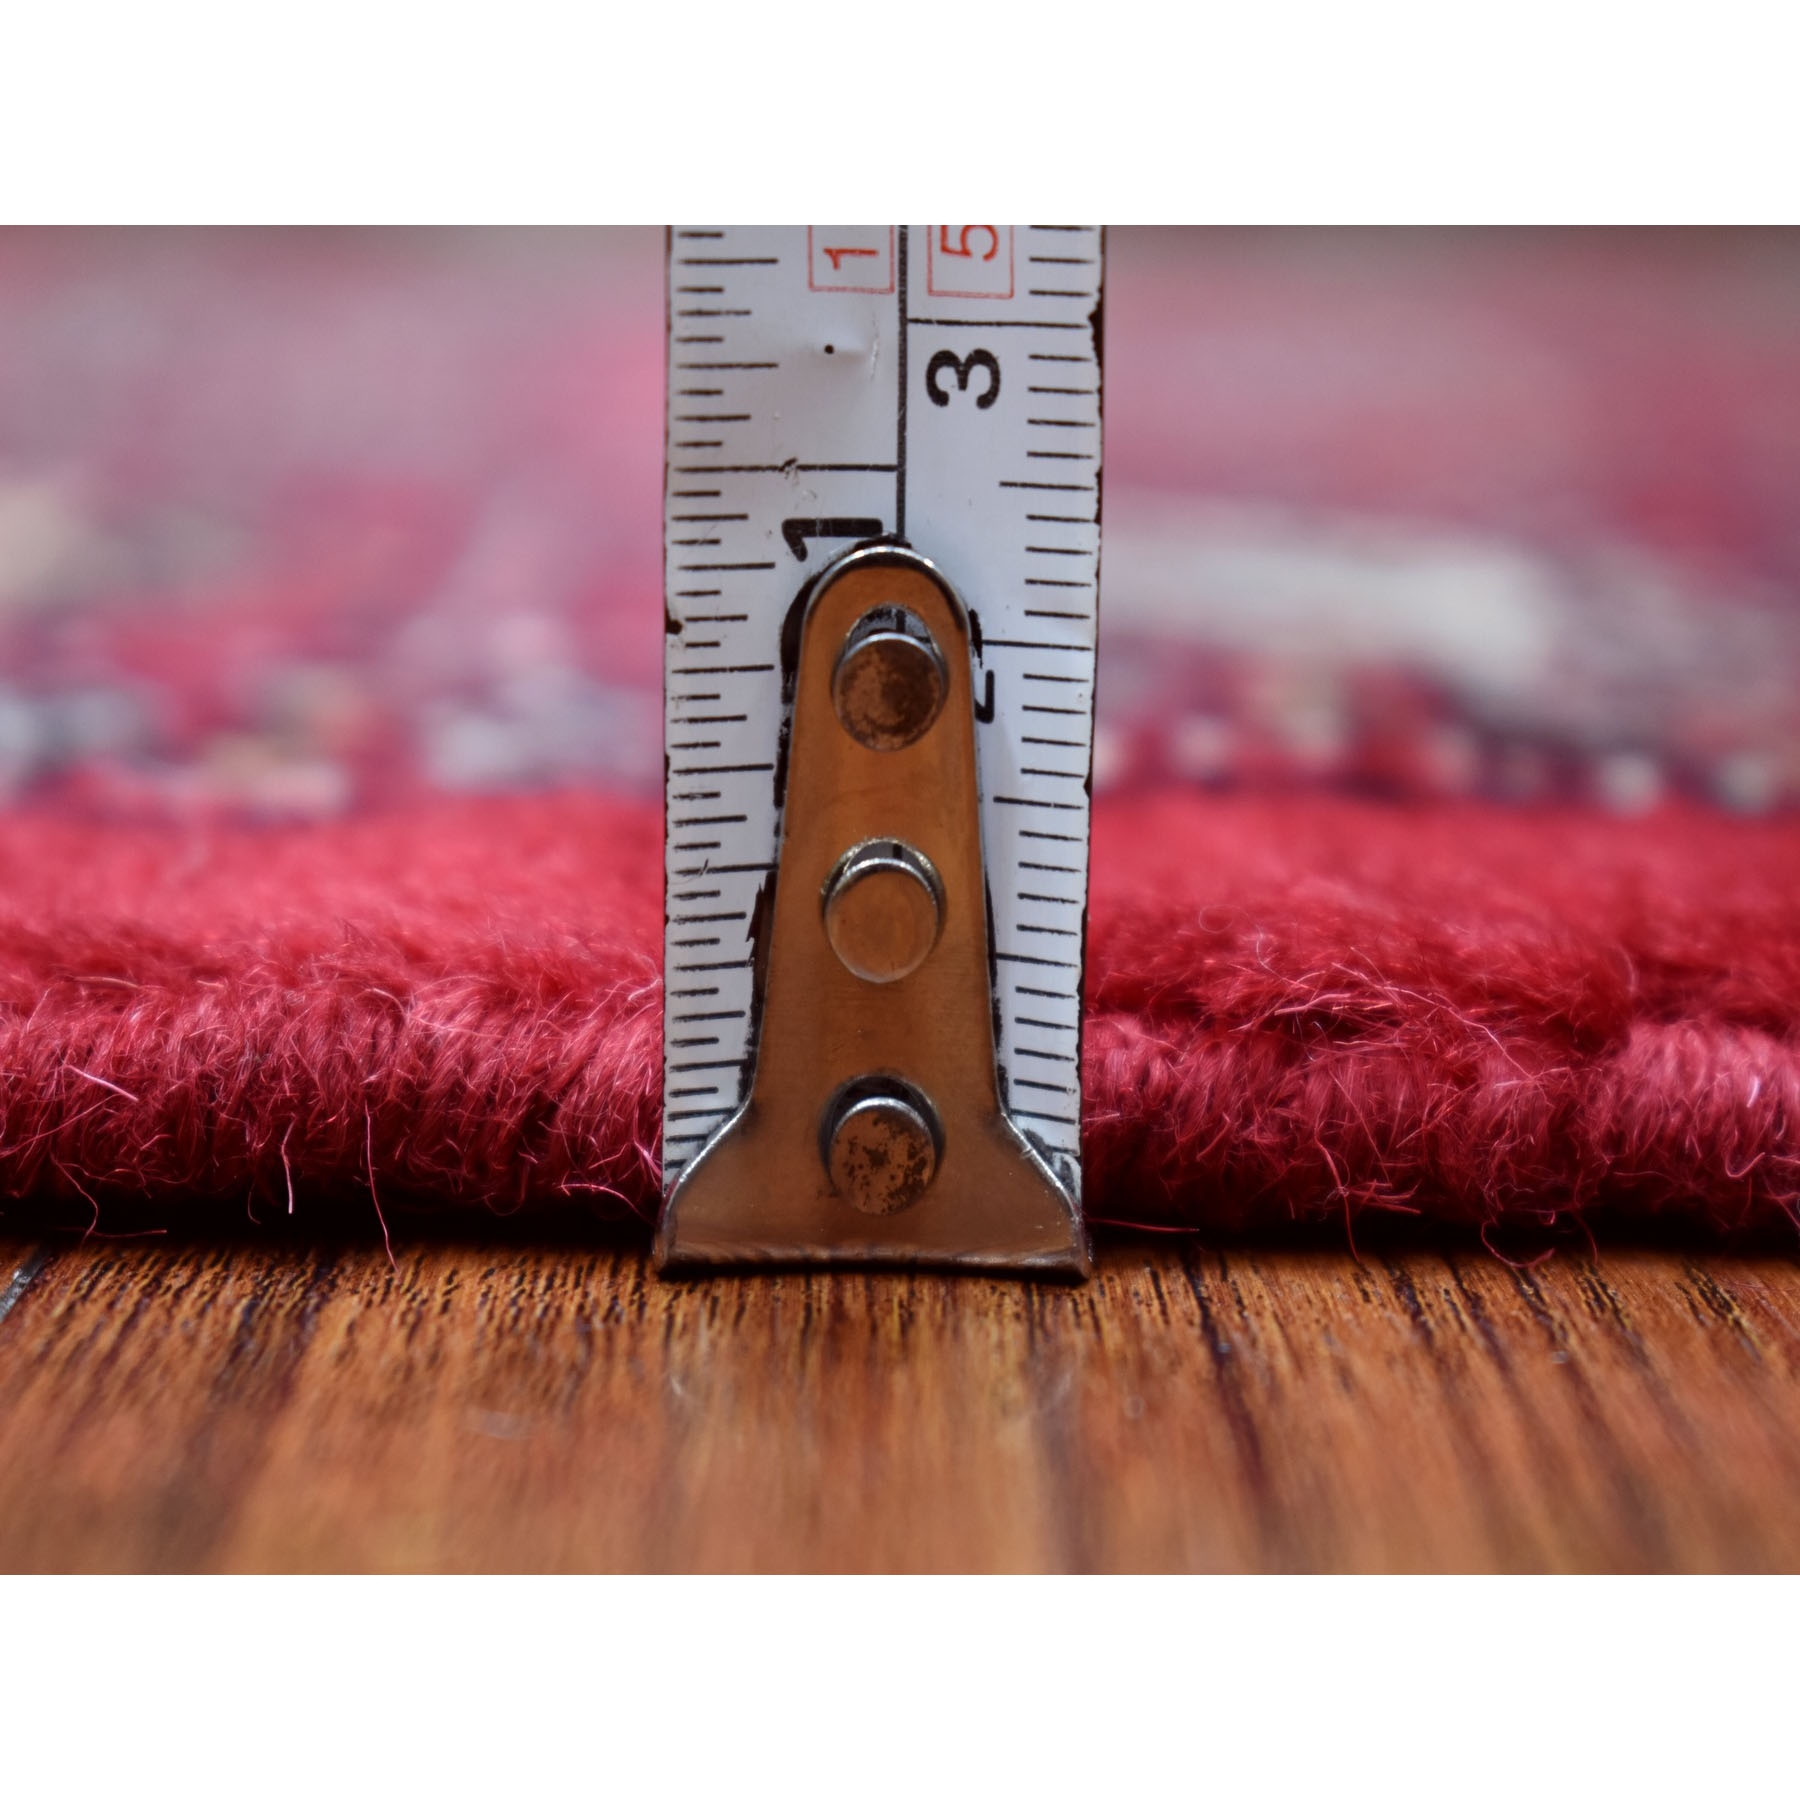 3'x5'10" Extra Soft Wool Deep and Rich Red Mori Bokara Hand Woven Oriental Wide Runner Rug 